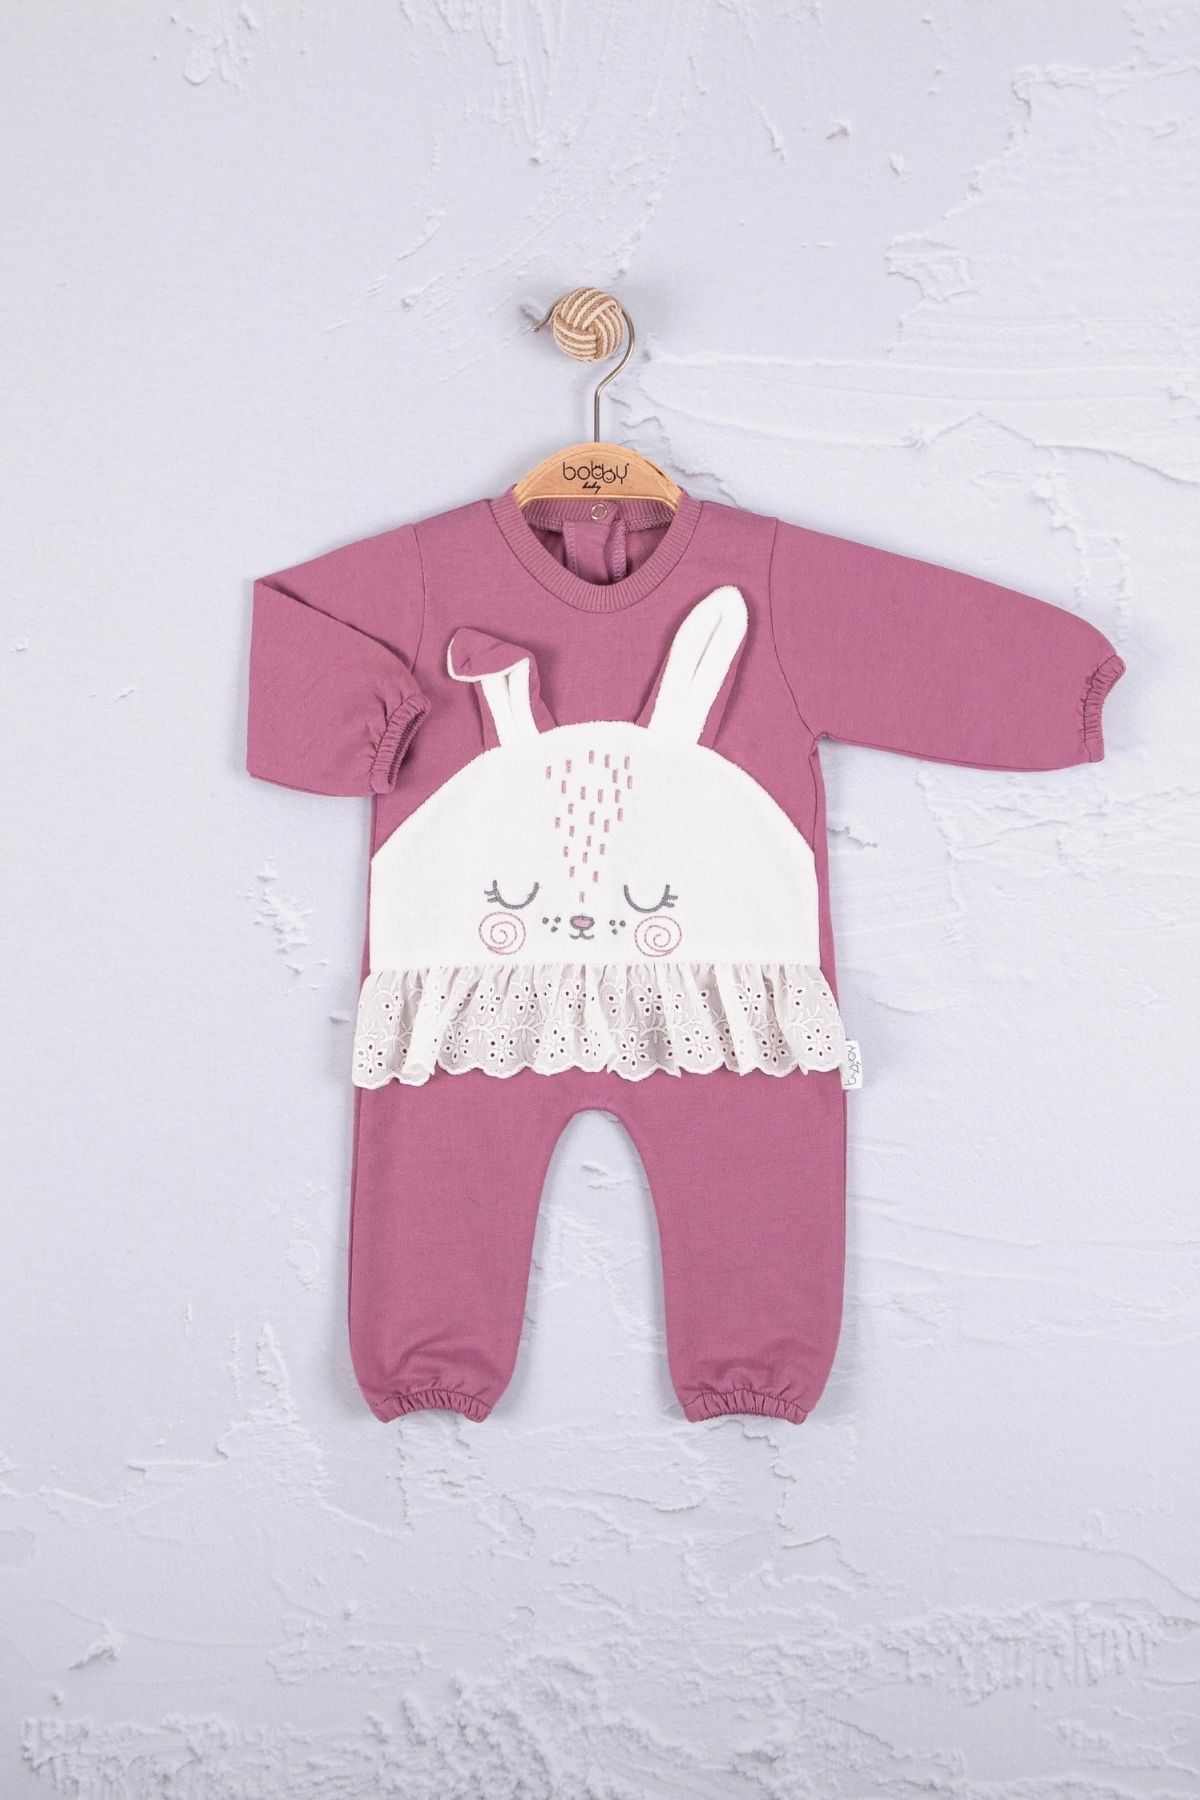 Babydonat Tavşan Nakışlı Güpürlü % 100 Pamuk Kız Bebek Tulum